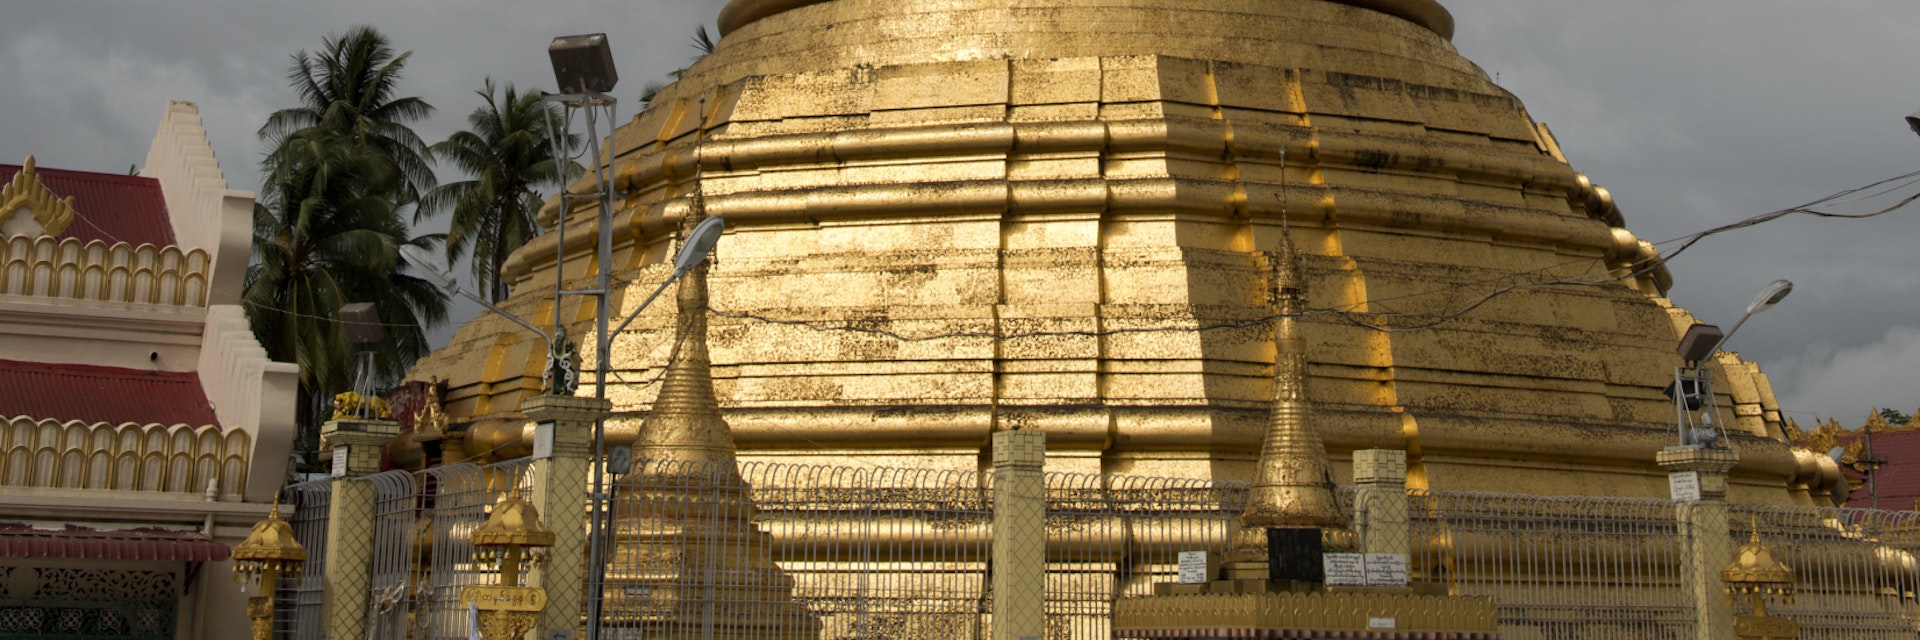 Stupa at Botataung Paya.